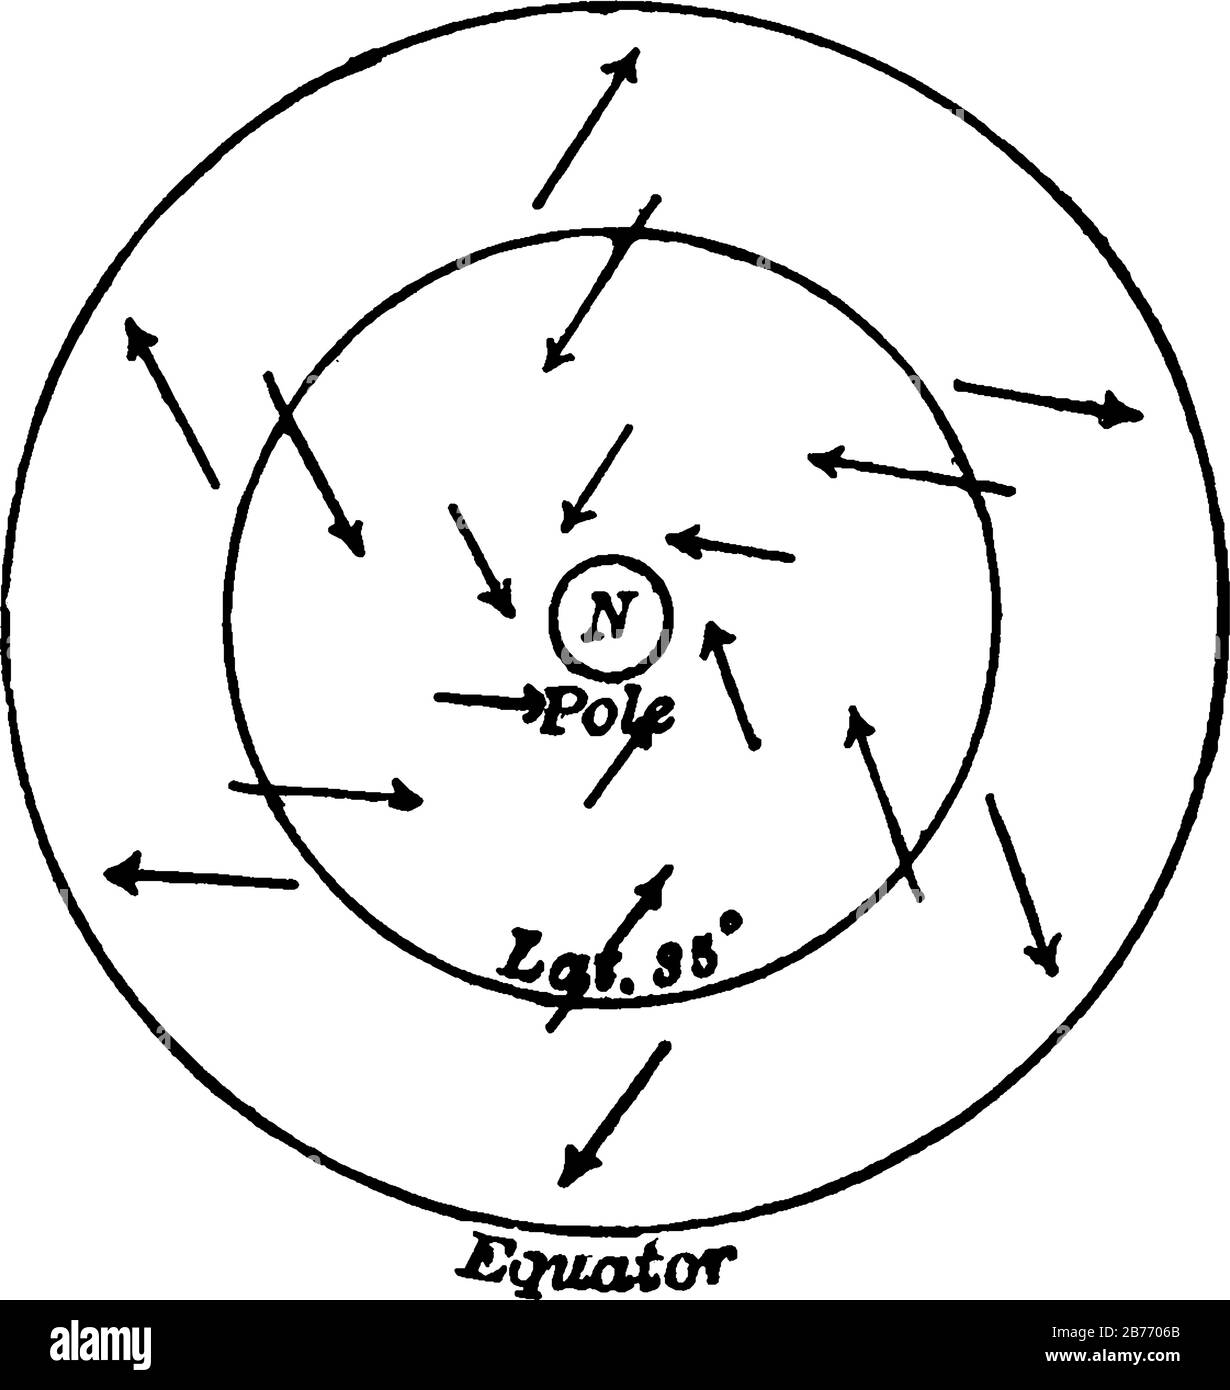 Una rappresentazione tipica della direzione emisferica generale delle correnti d'aria orizzontali (inferiori), del disegno a linea d'annata o dell'illustrazione dell'incisione. Illustrazione Vettoriale